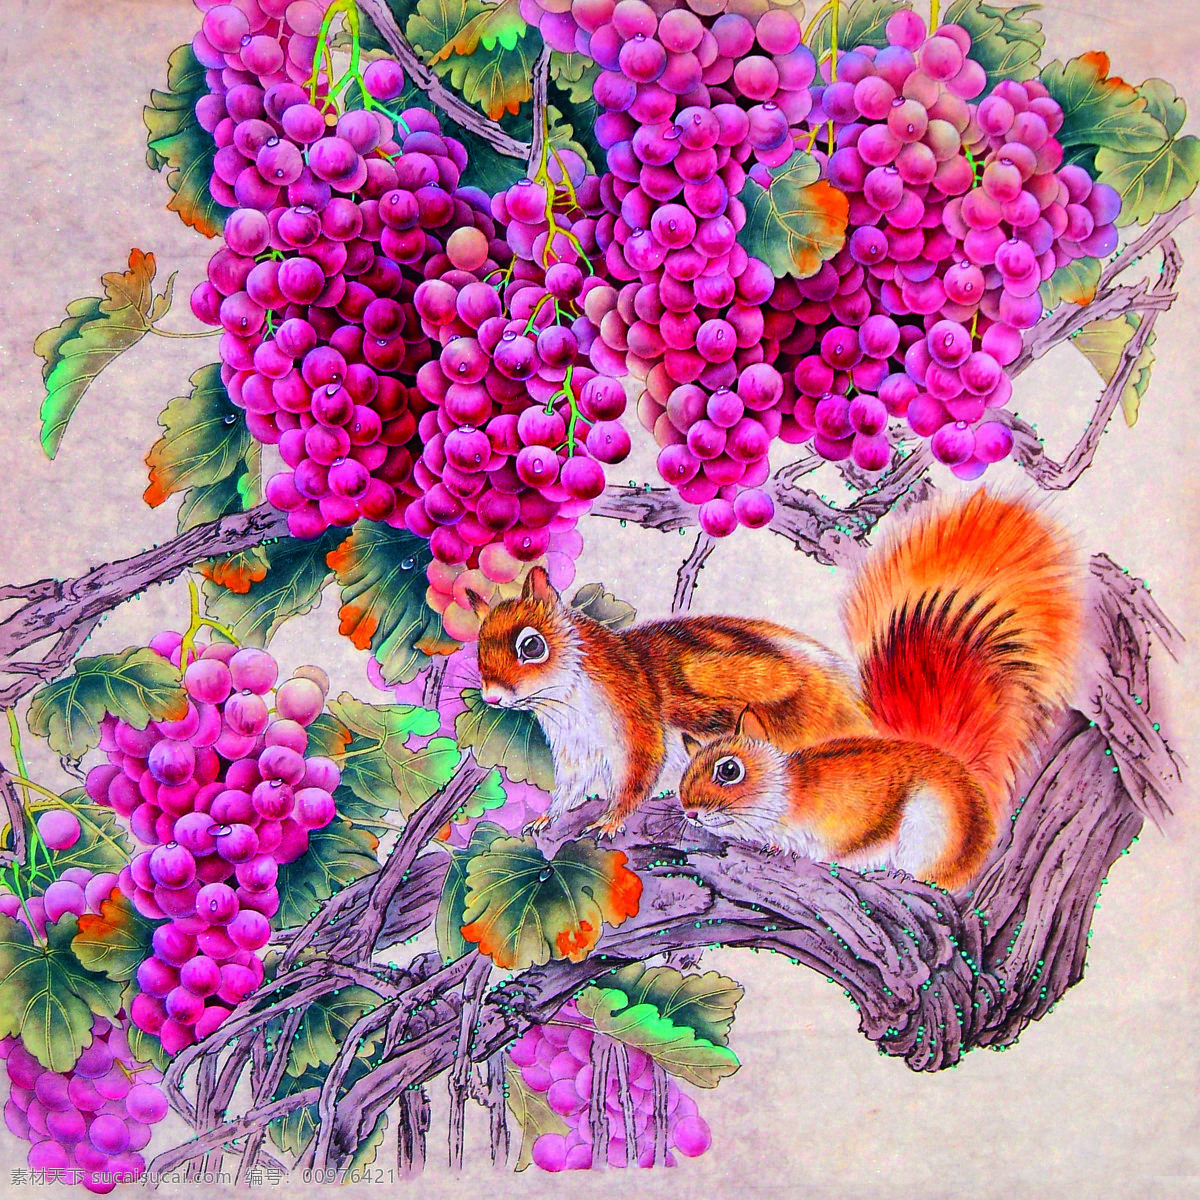 松鼠吃葡萄 美术 中国画 彩墨画 松鼠 葡萄子 文化艺术 绘画书法